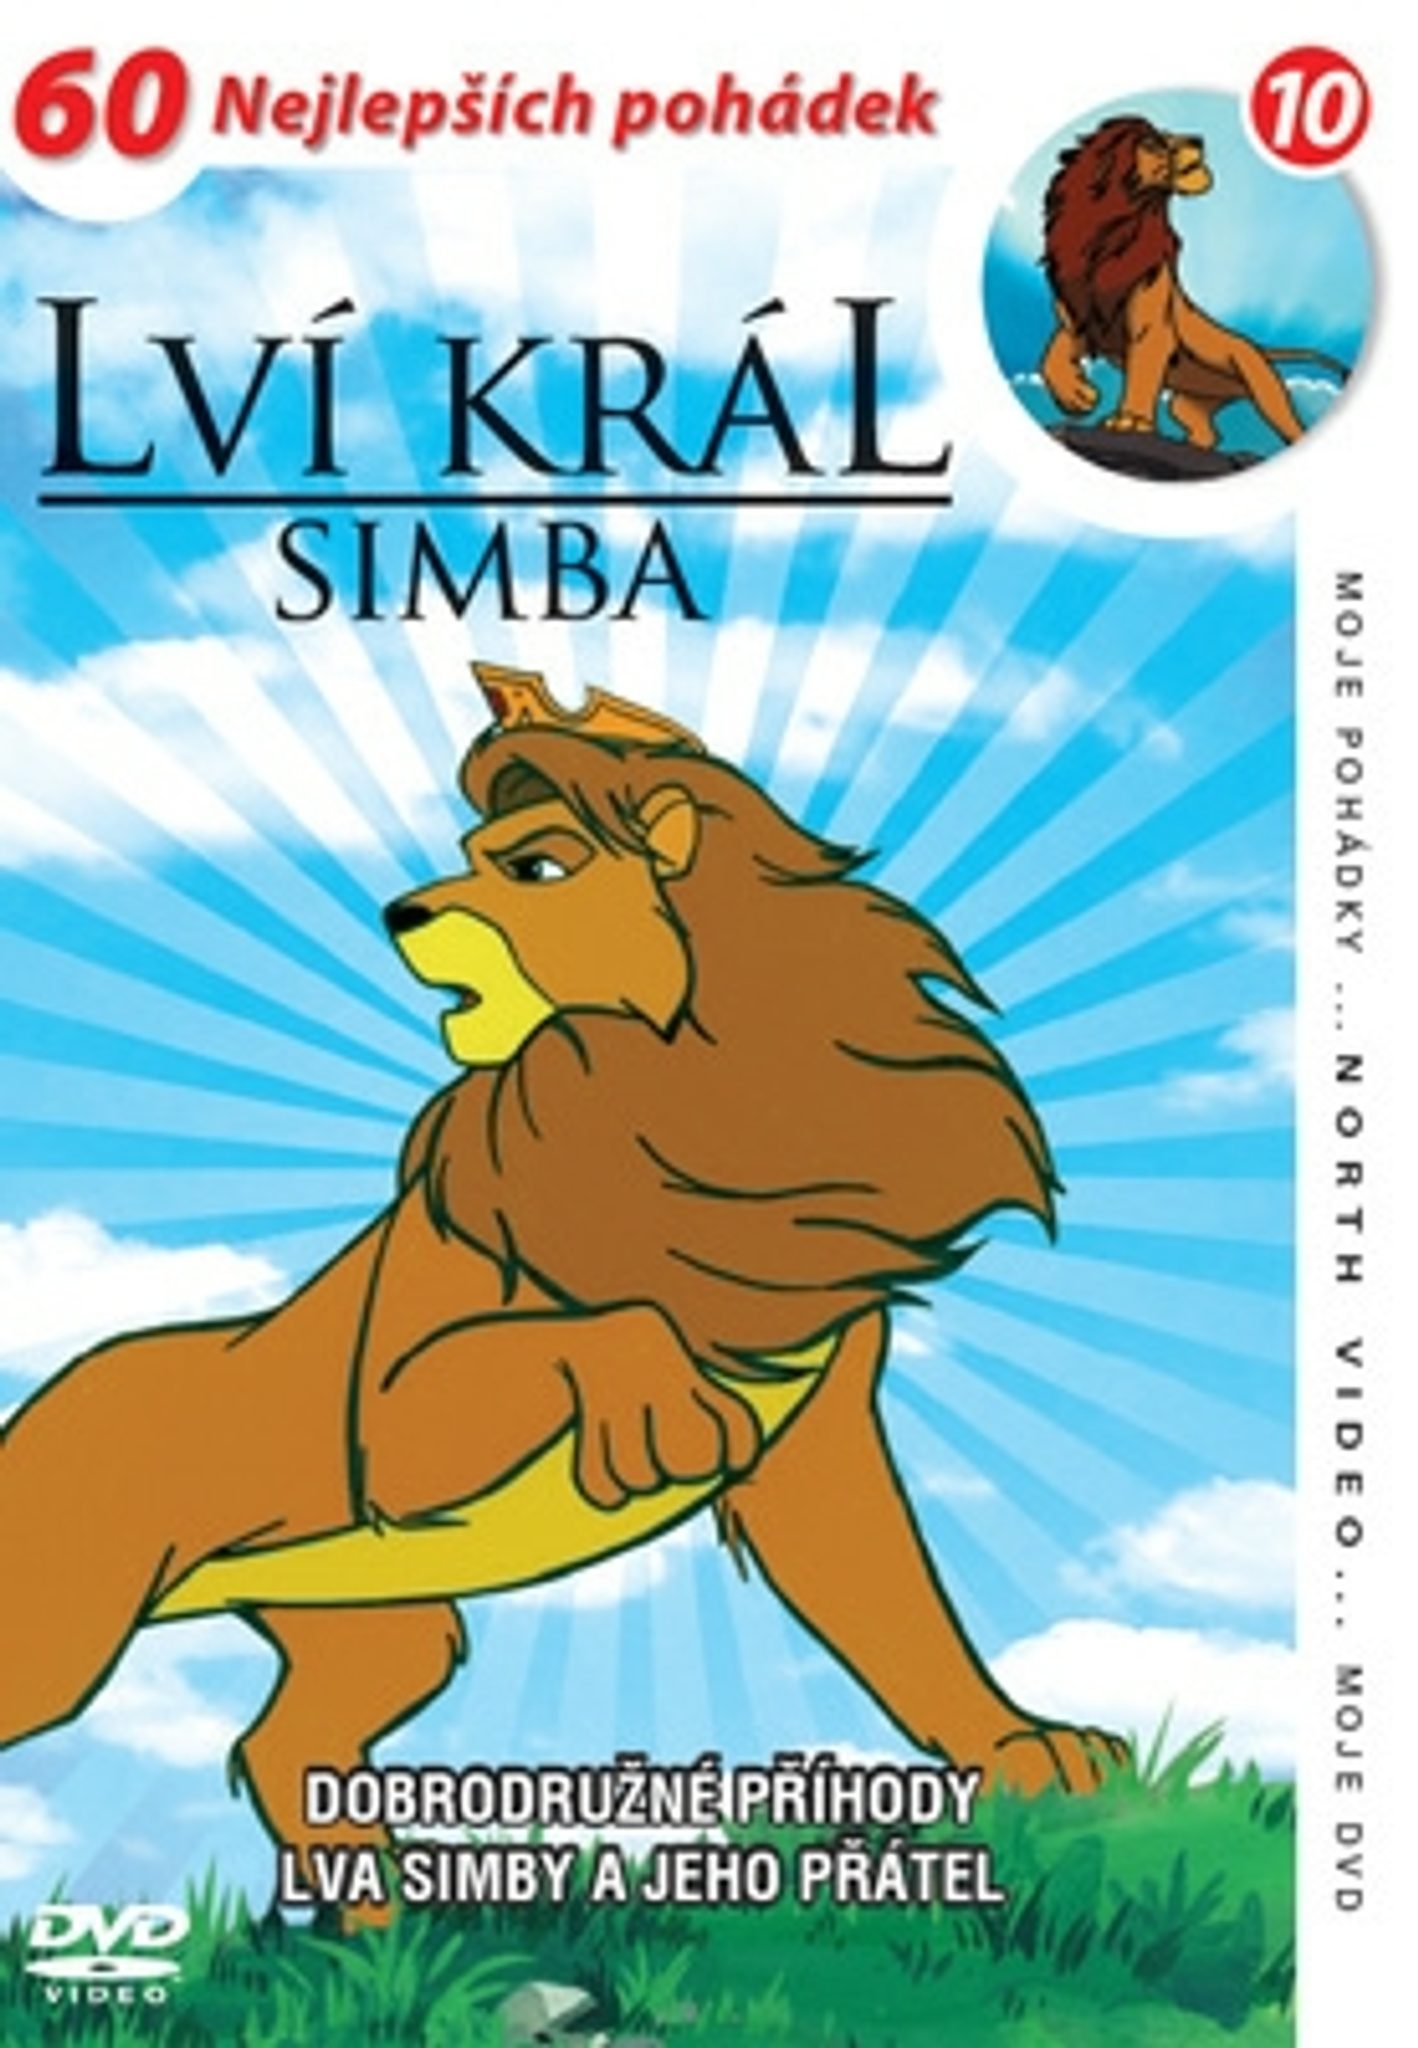 DVD Lví král - Simba 10